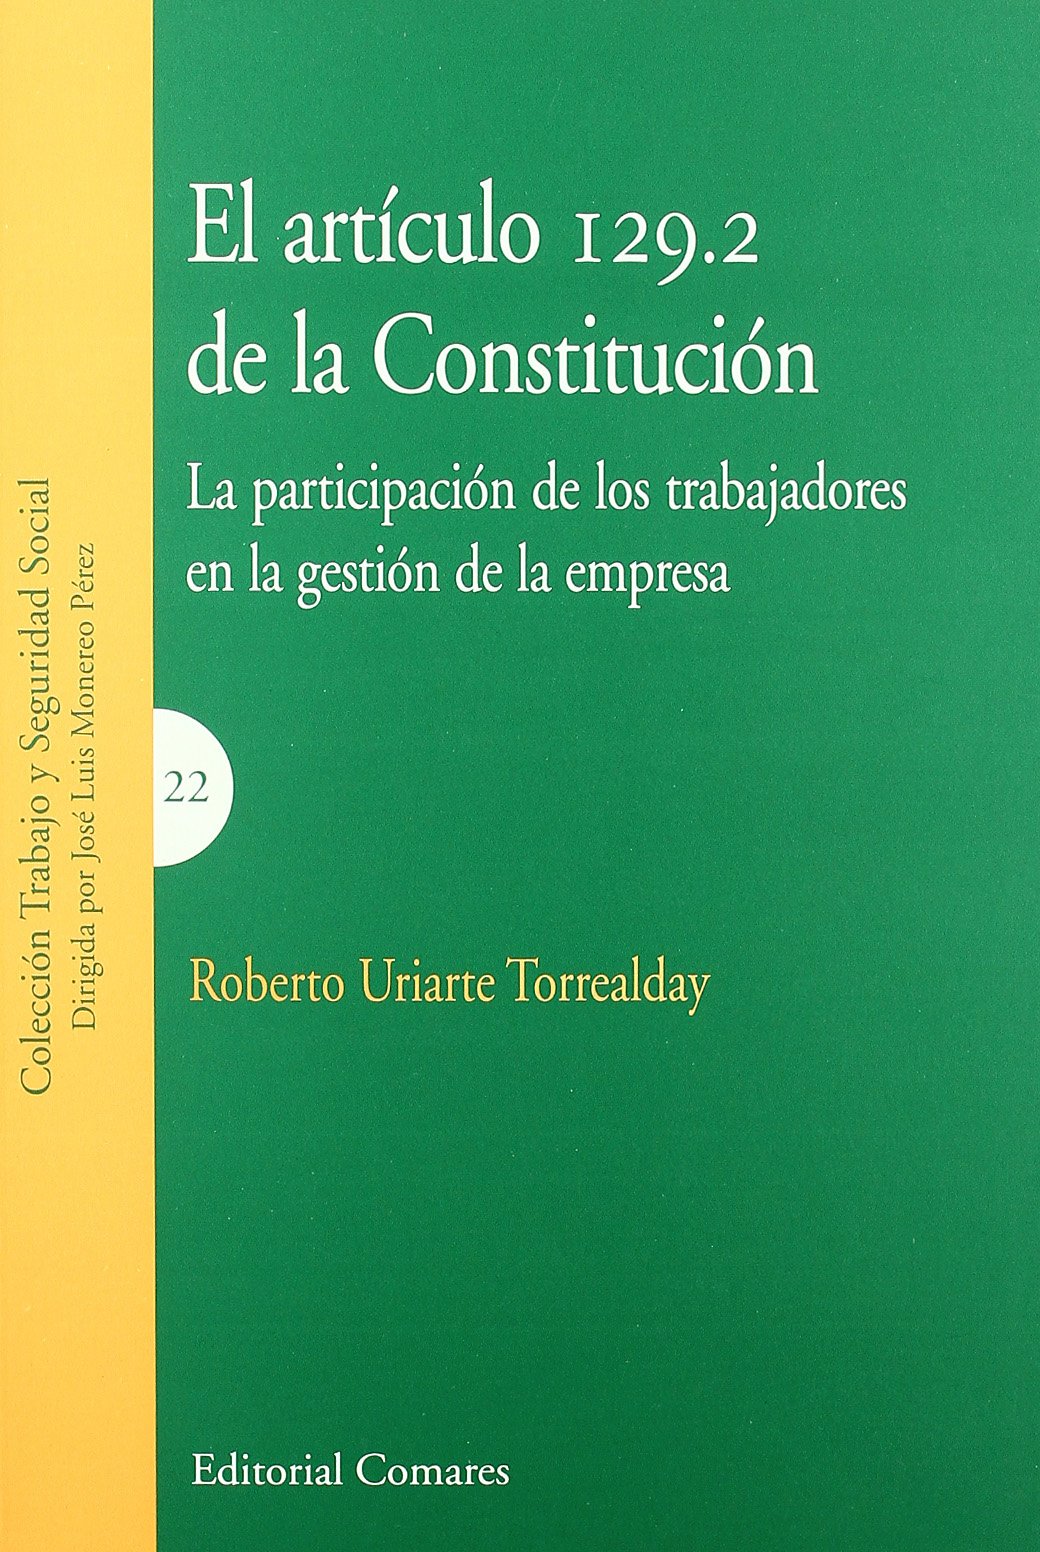 Artículo 129.2 de la Constitución